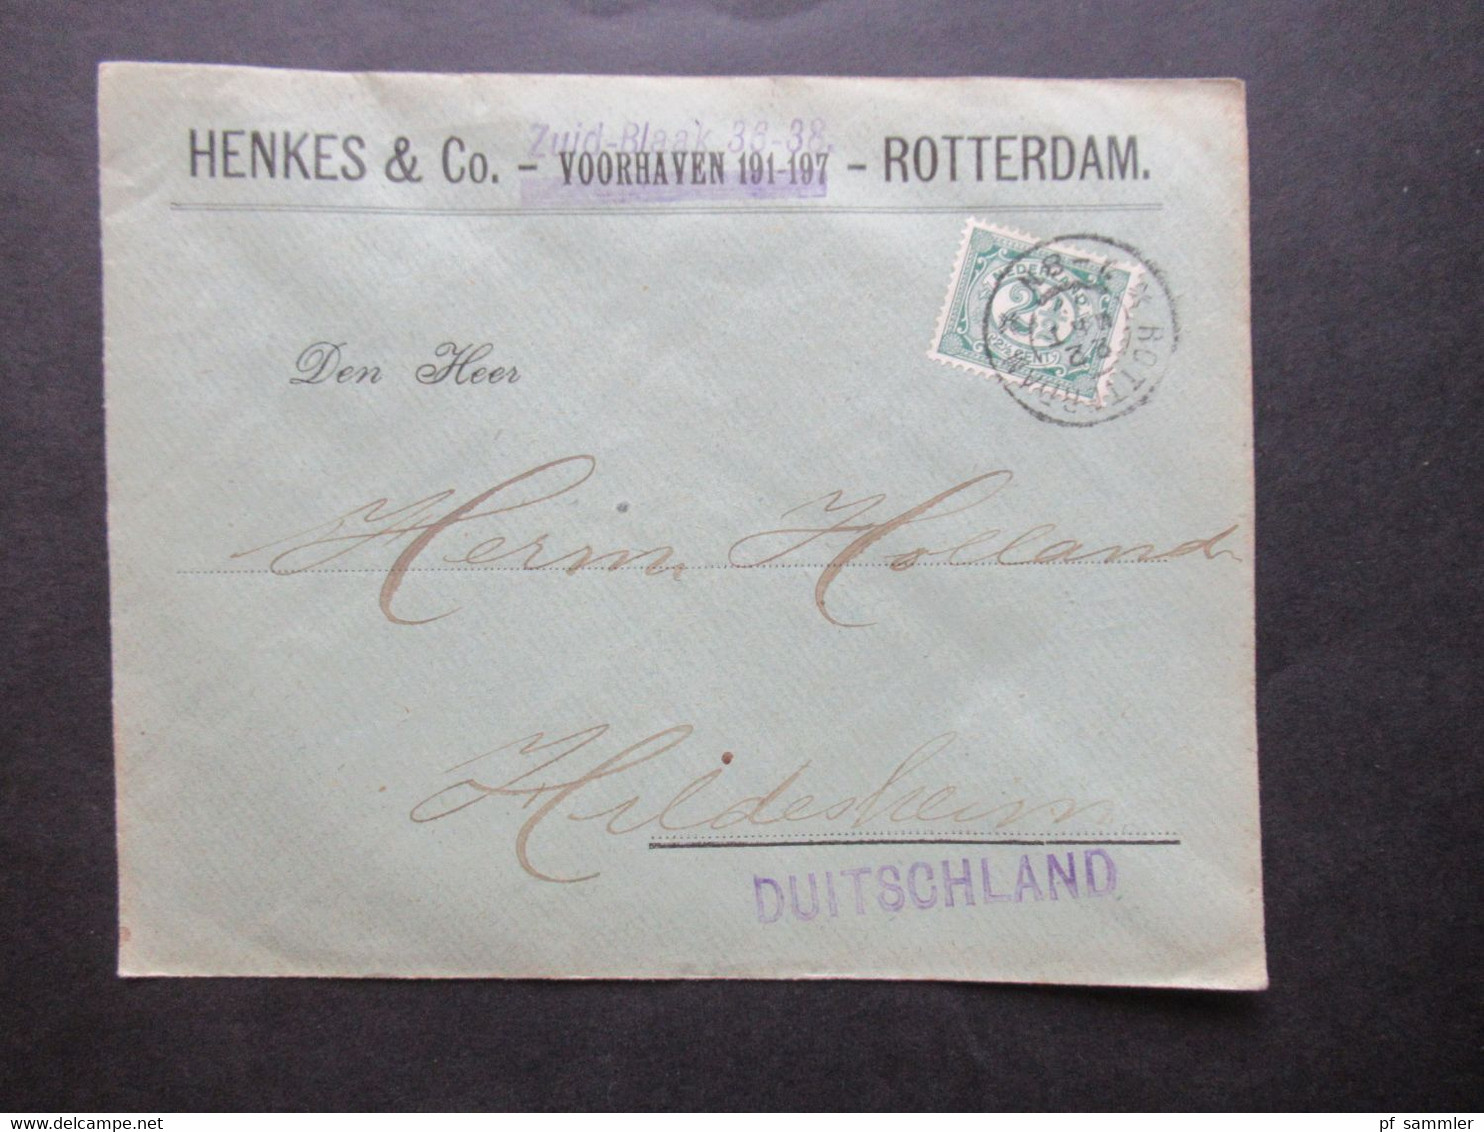 Niederlande 3 Belege / bedrucke Umschläge / Firmenbelege 1x 1902 und 2x 1920er Jahre! Rotterdam, Amsterdam, Vlaardingen